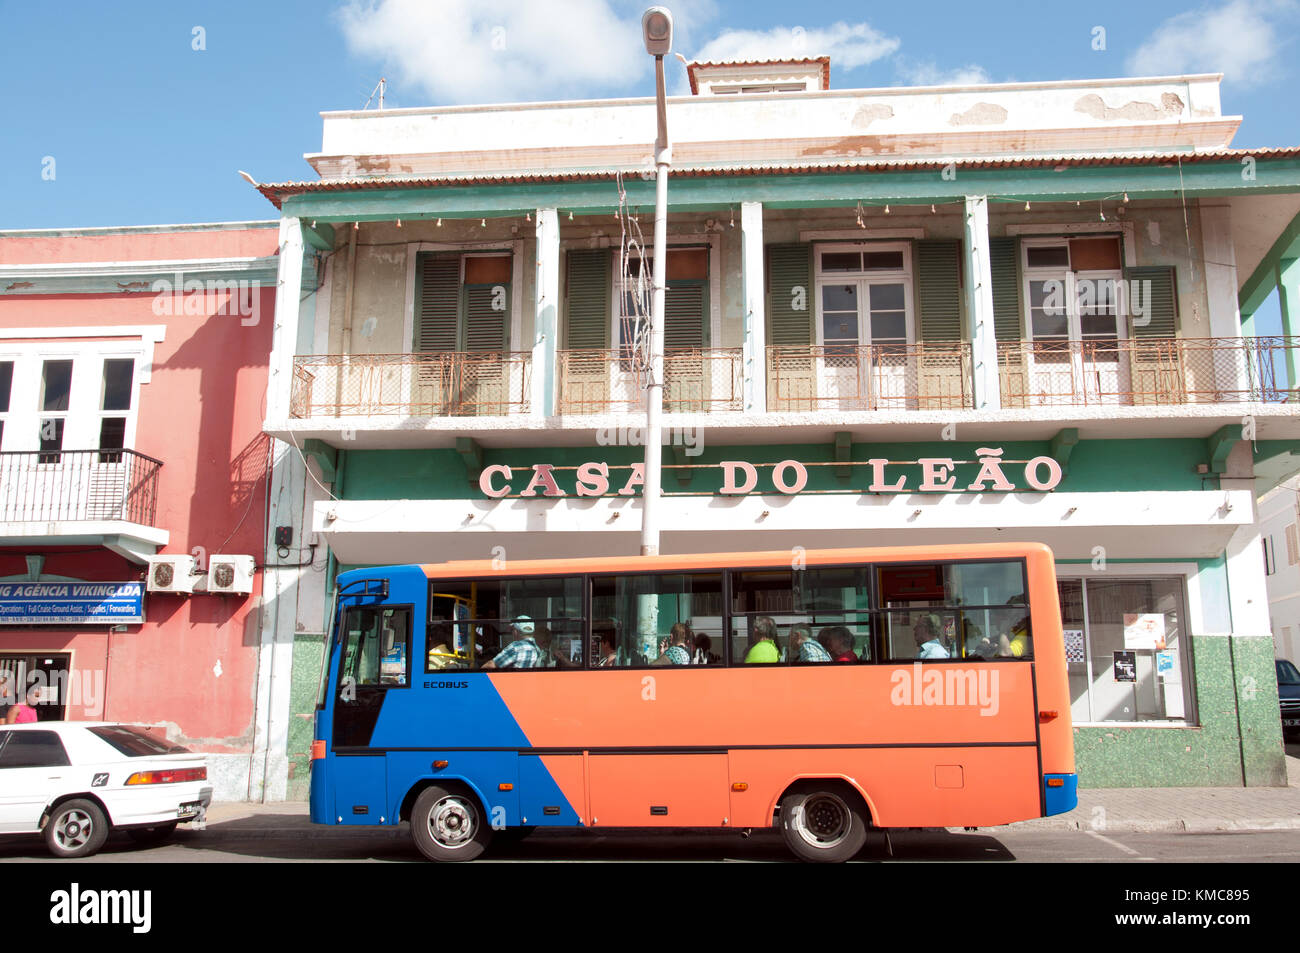 L'autobus di colore brghoso passa accanto a un edificio di nome portoghese nella strada principale, Rua de Lisboa, a Mindelo, capitale dell'isola di São Vicente nell'arcipelago del Capo Verde Foto Stock